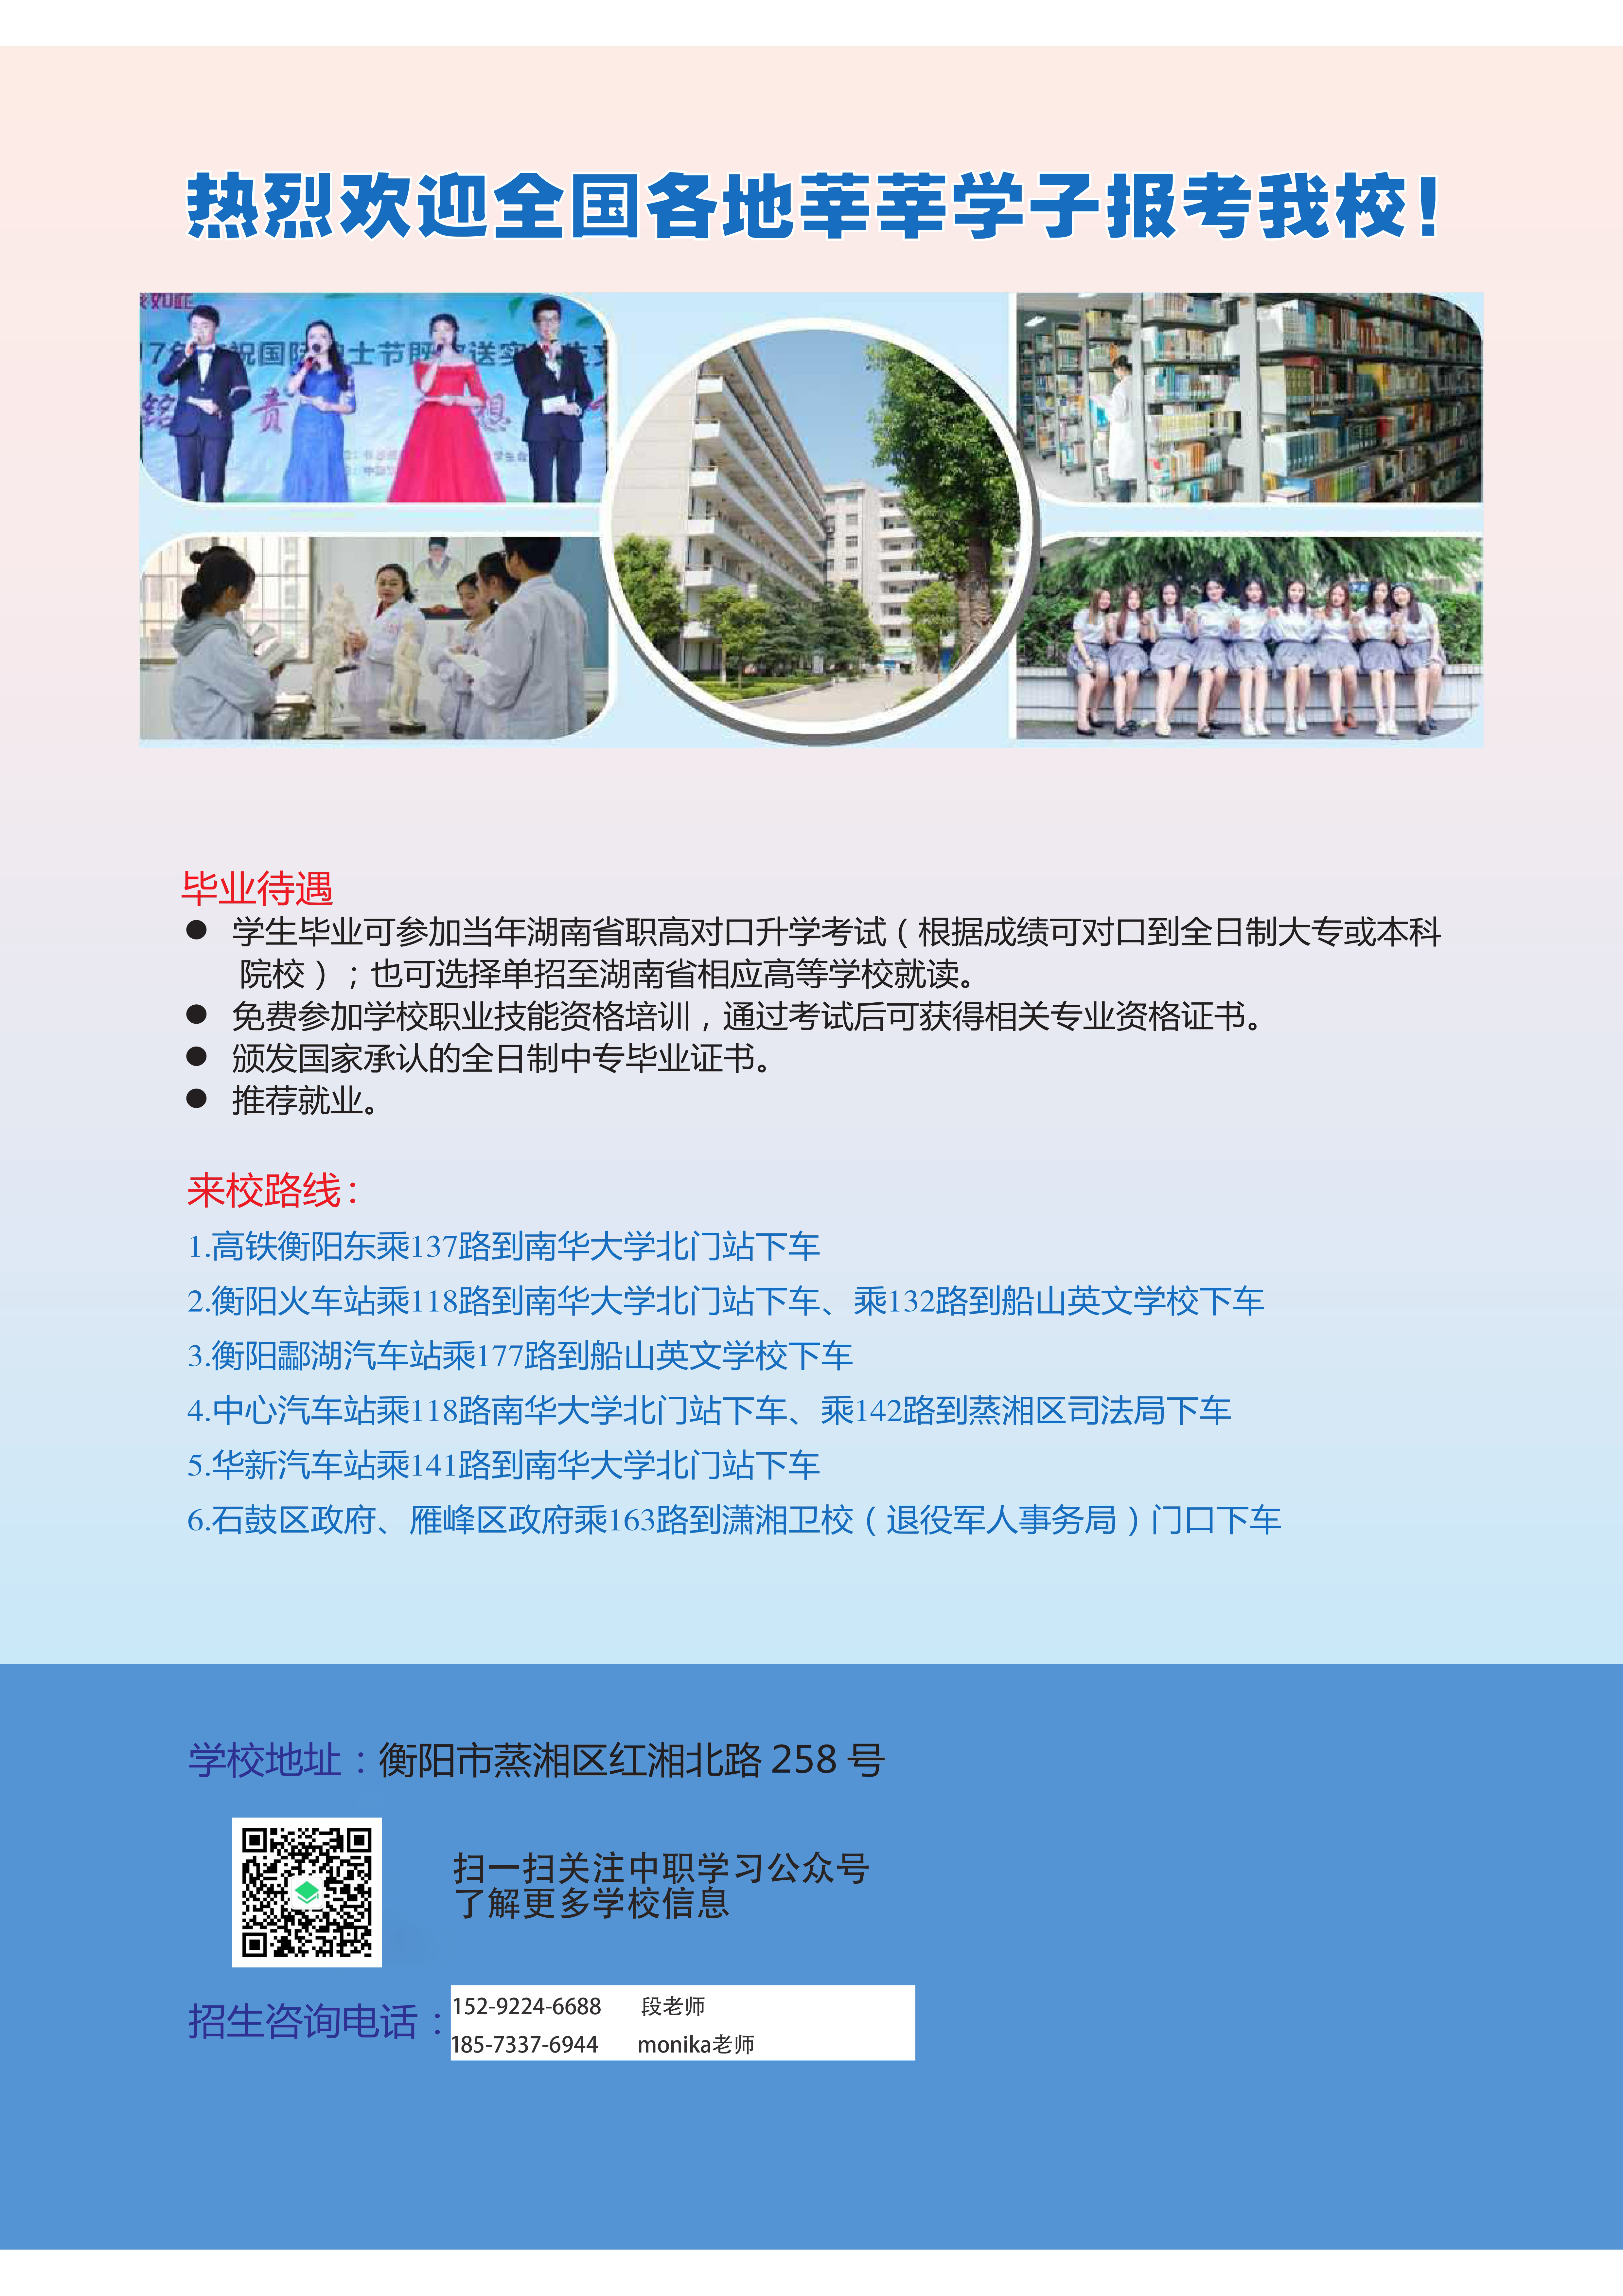 衡阳市潇湘卫生中等专业学校-2021年招生简章